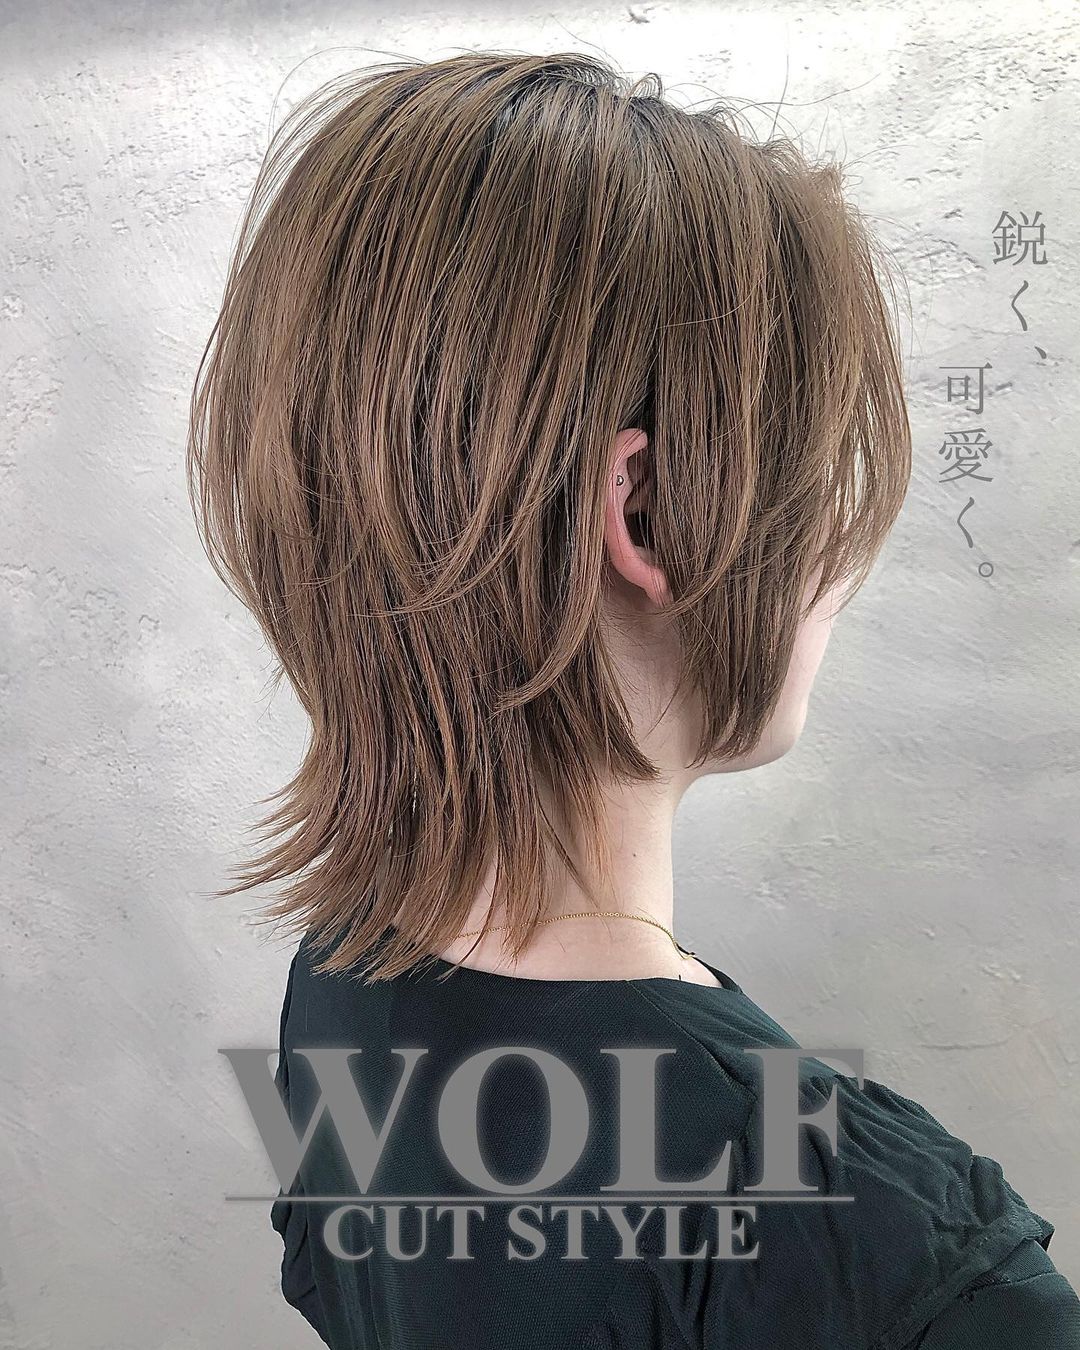 Wolf Cut